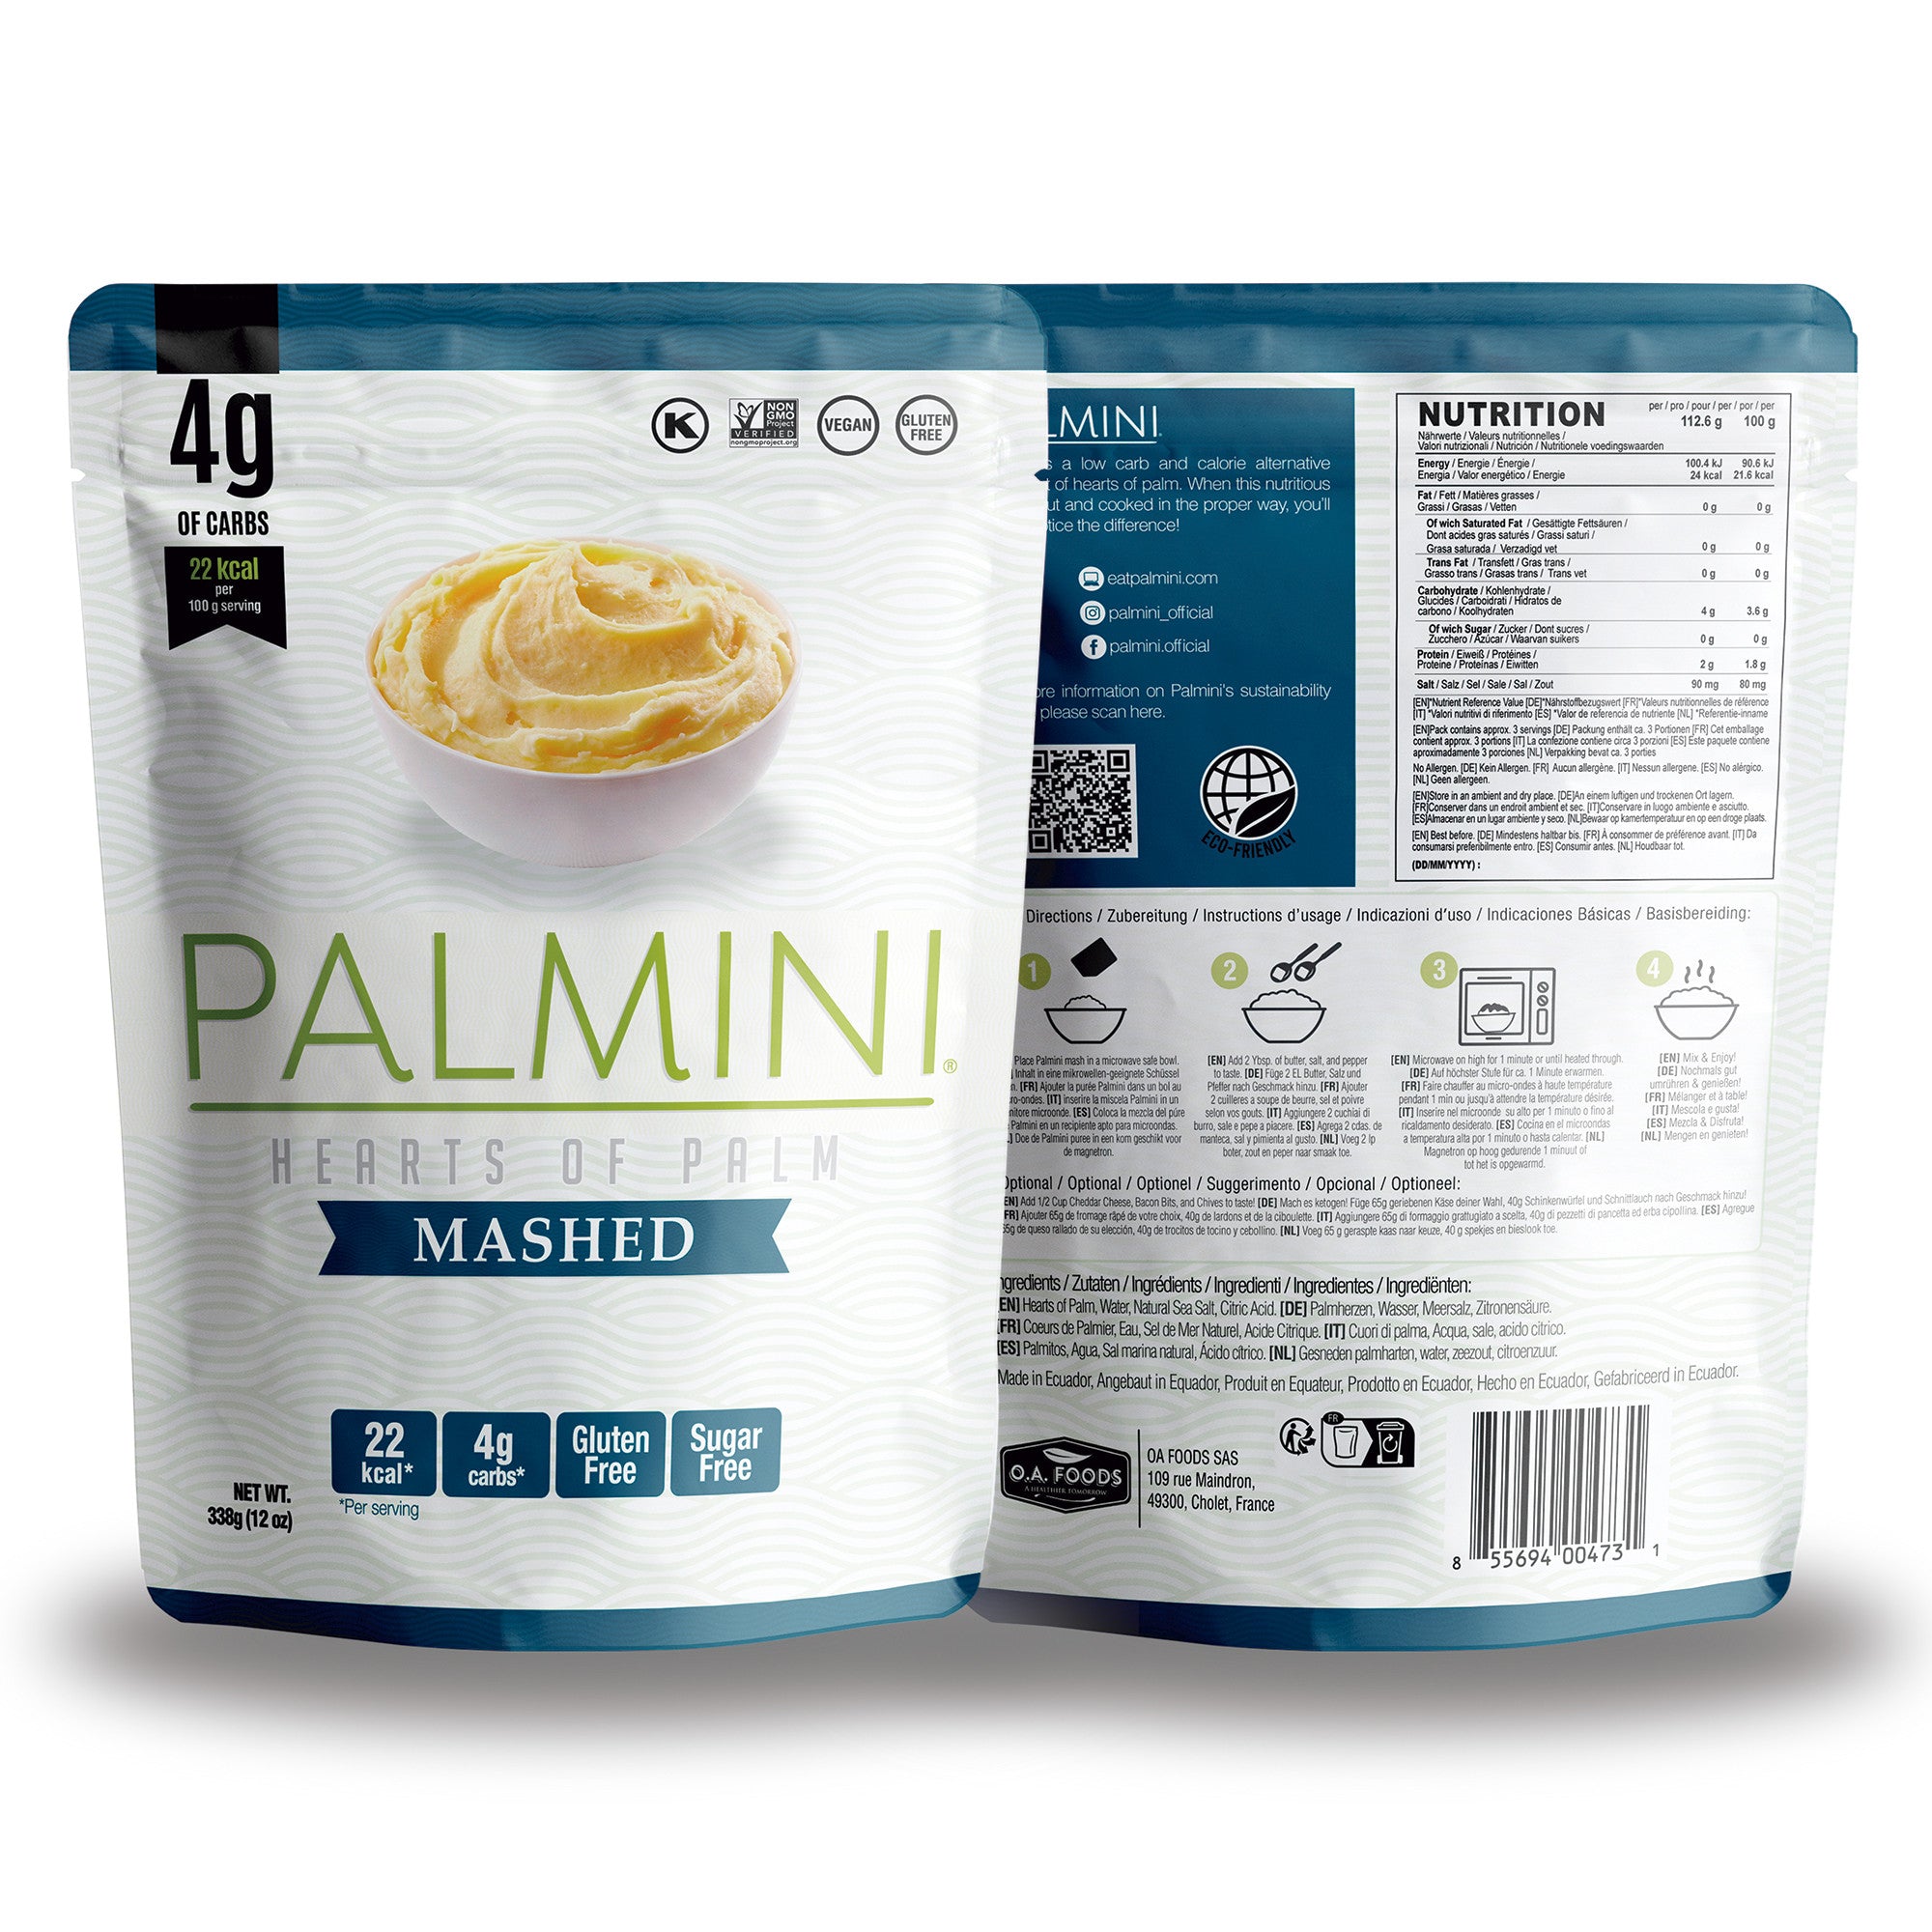 Palmini - Purée nature - 4 g de glucides - Sans gluten - Paquet de 340 g